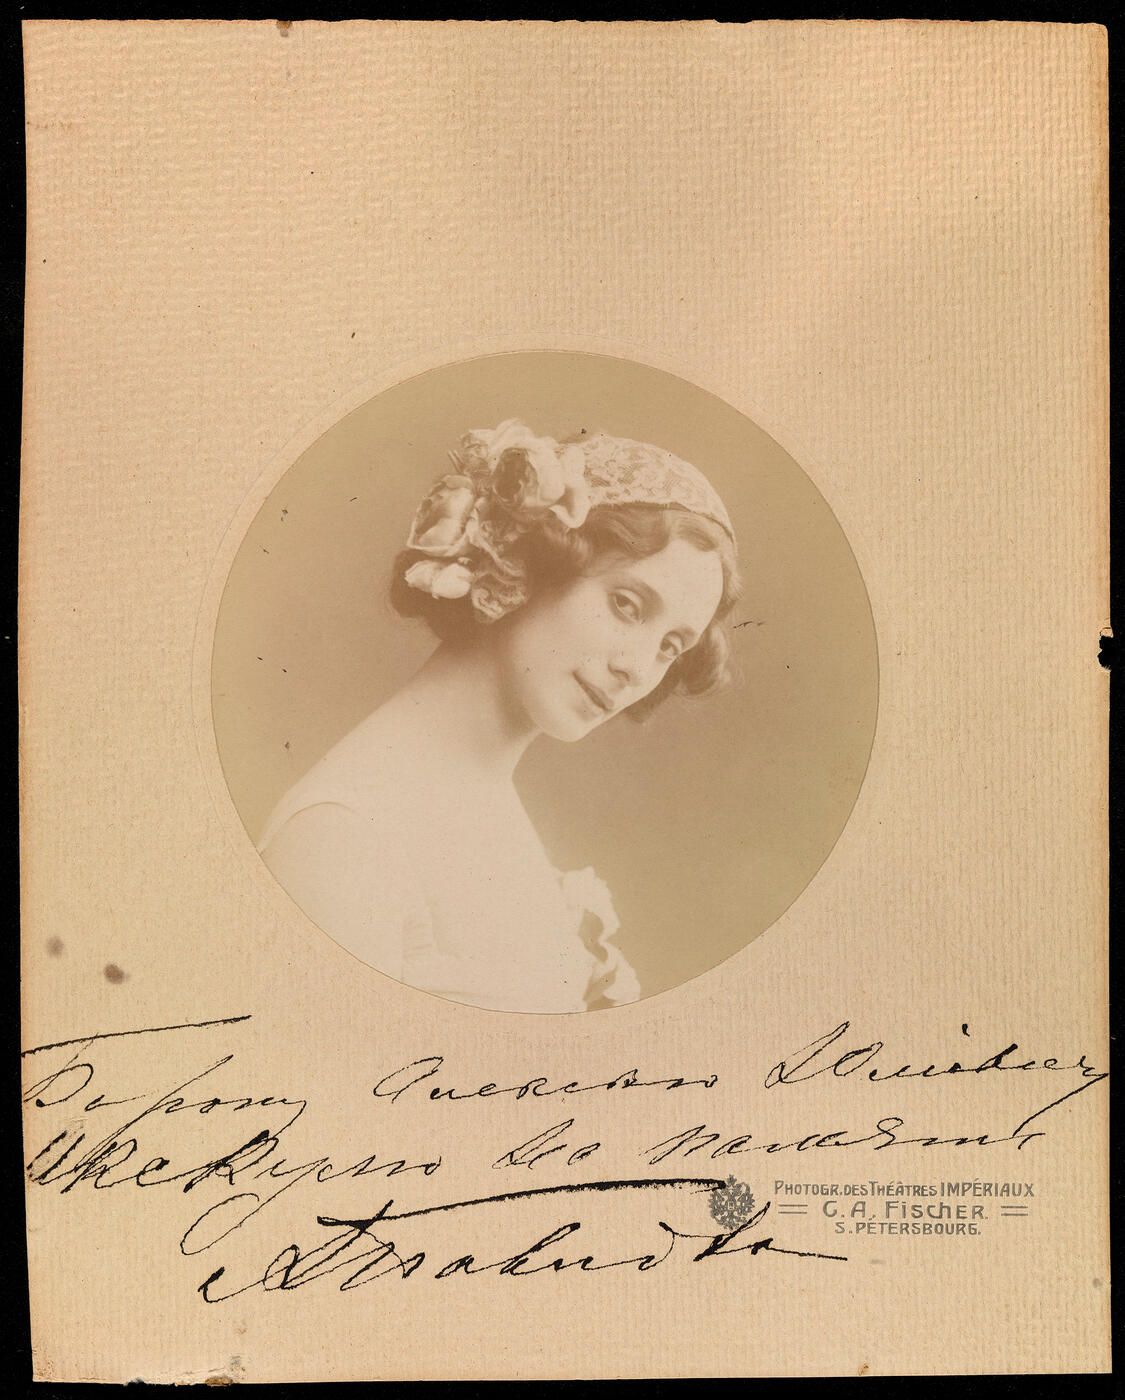 Consisting of a signed photograph of Matilda Kshesinskaya, a signed photograph of Anna Pavlova, and a photograph of Tamara Karsavina,